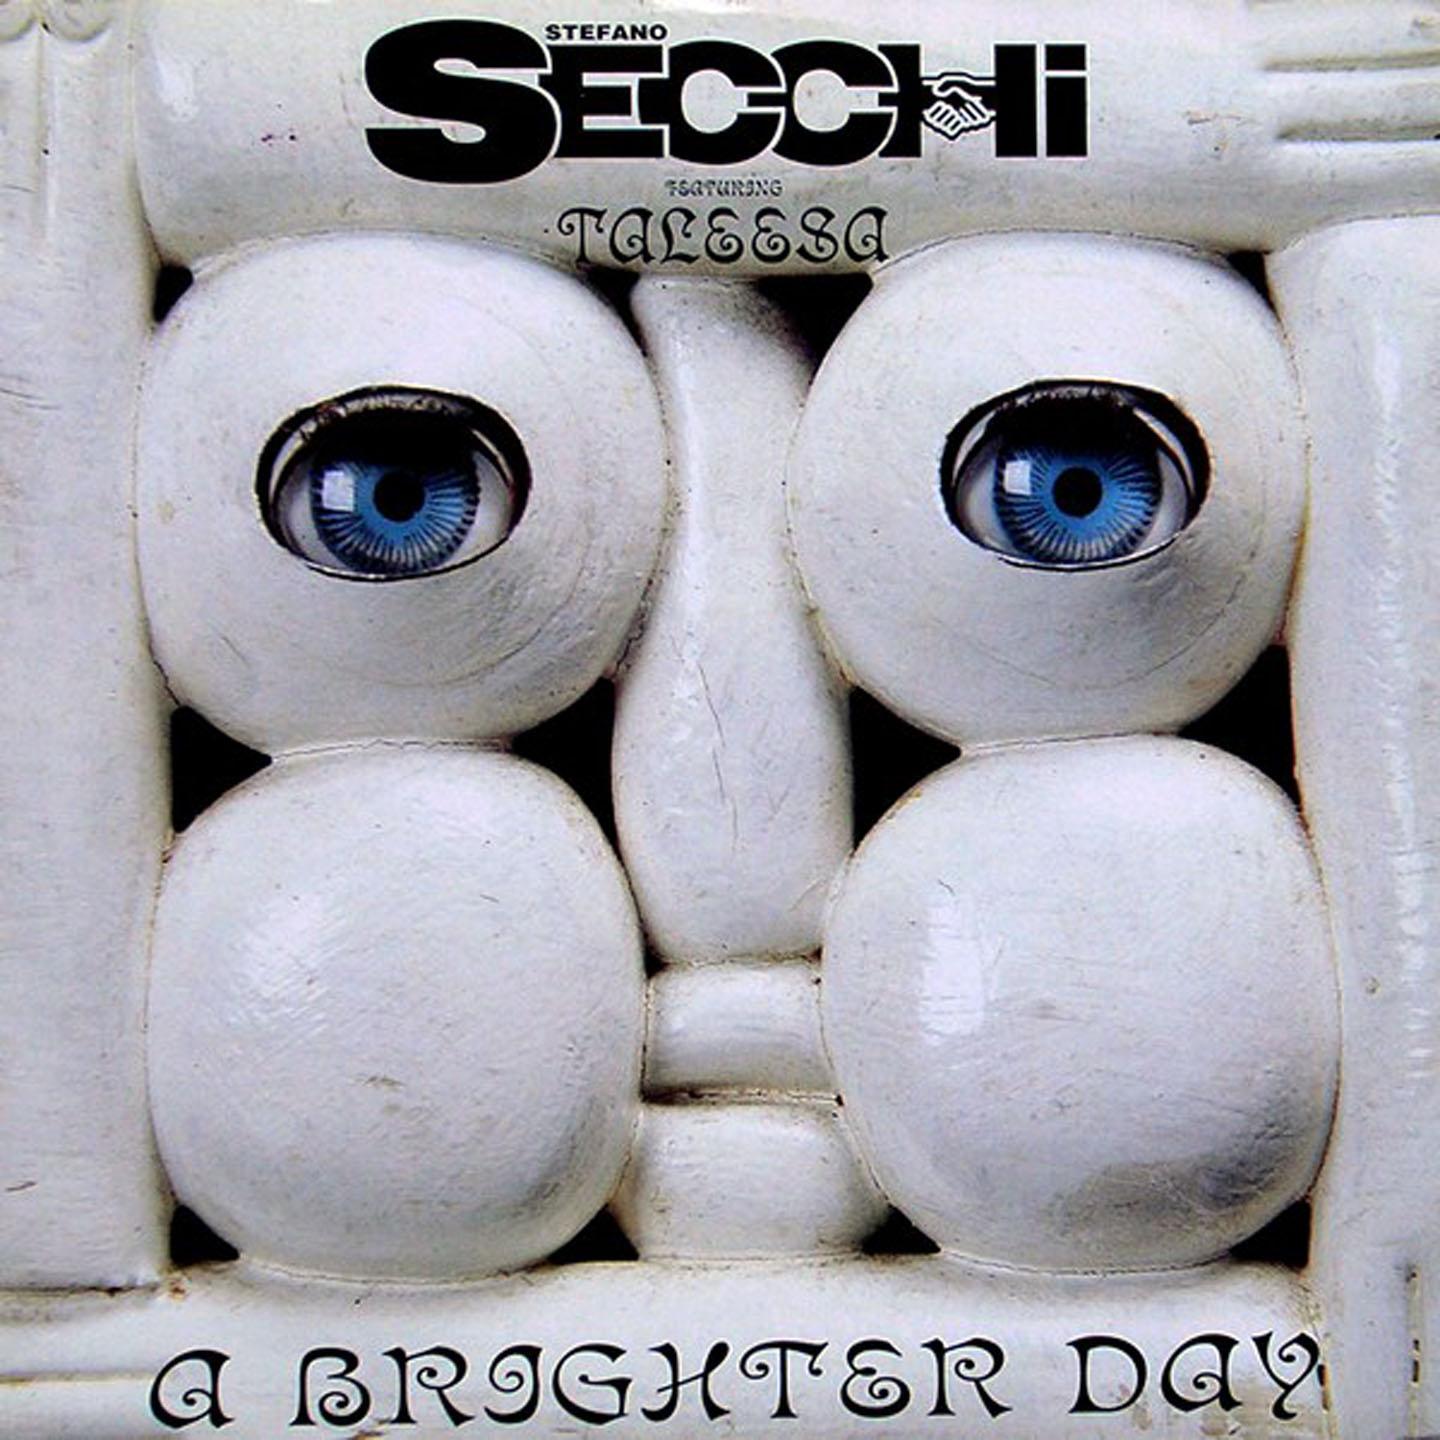 Stefano Secchi - A Brighter Day (Instrumental)